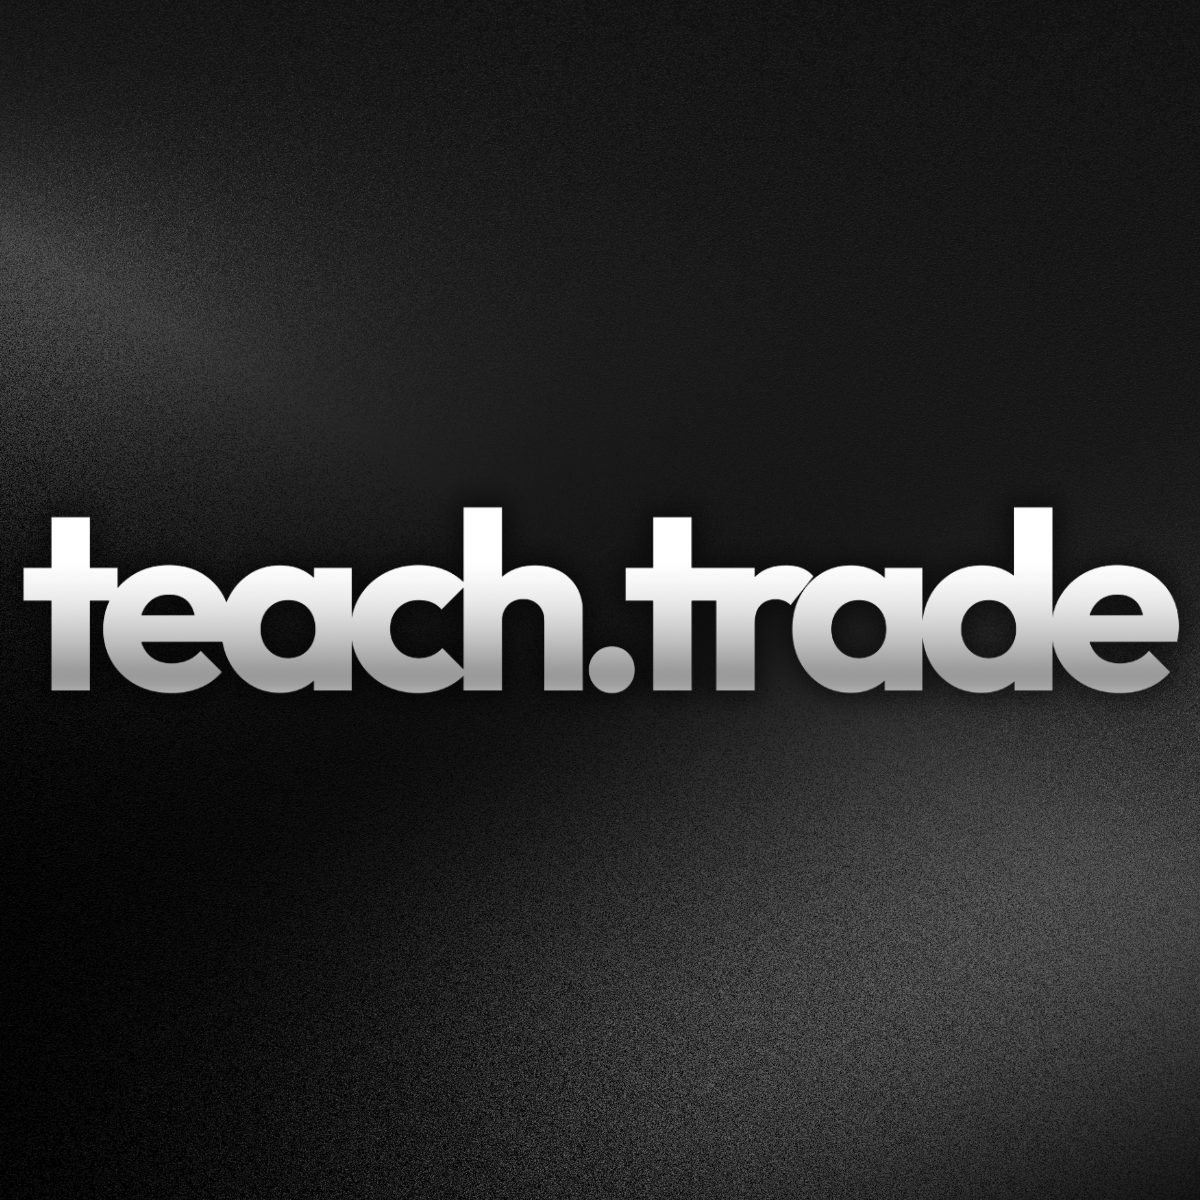 Teach.Trade logo